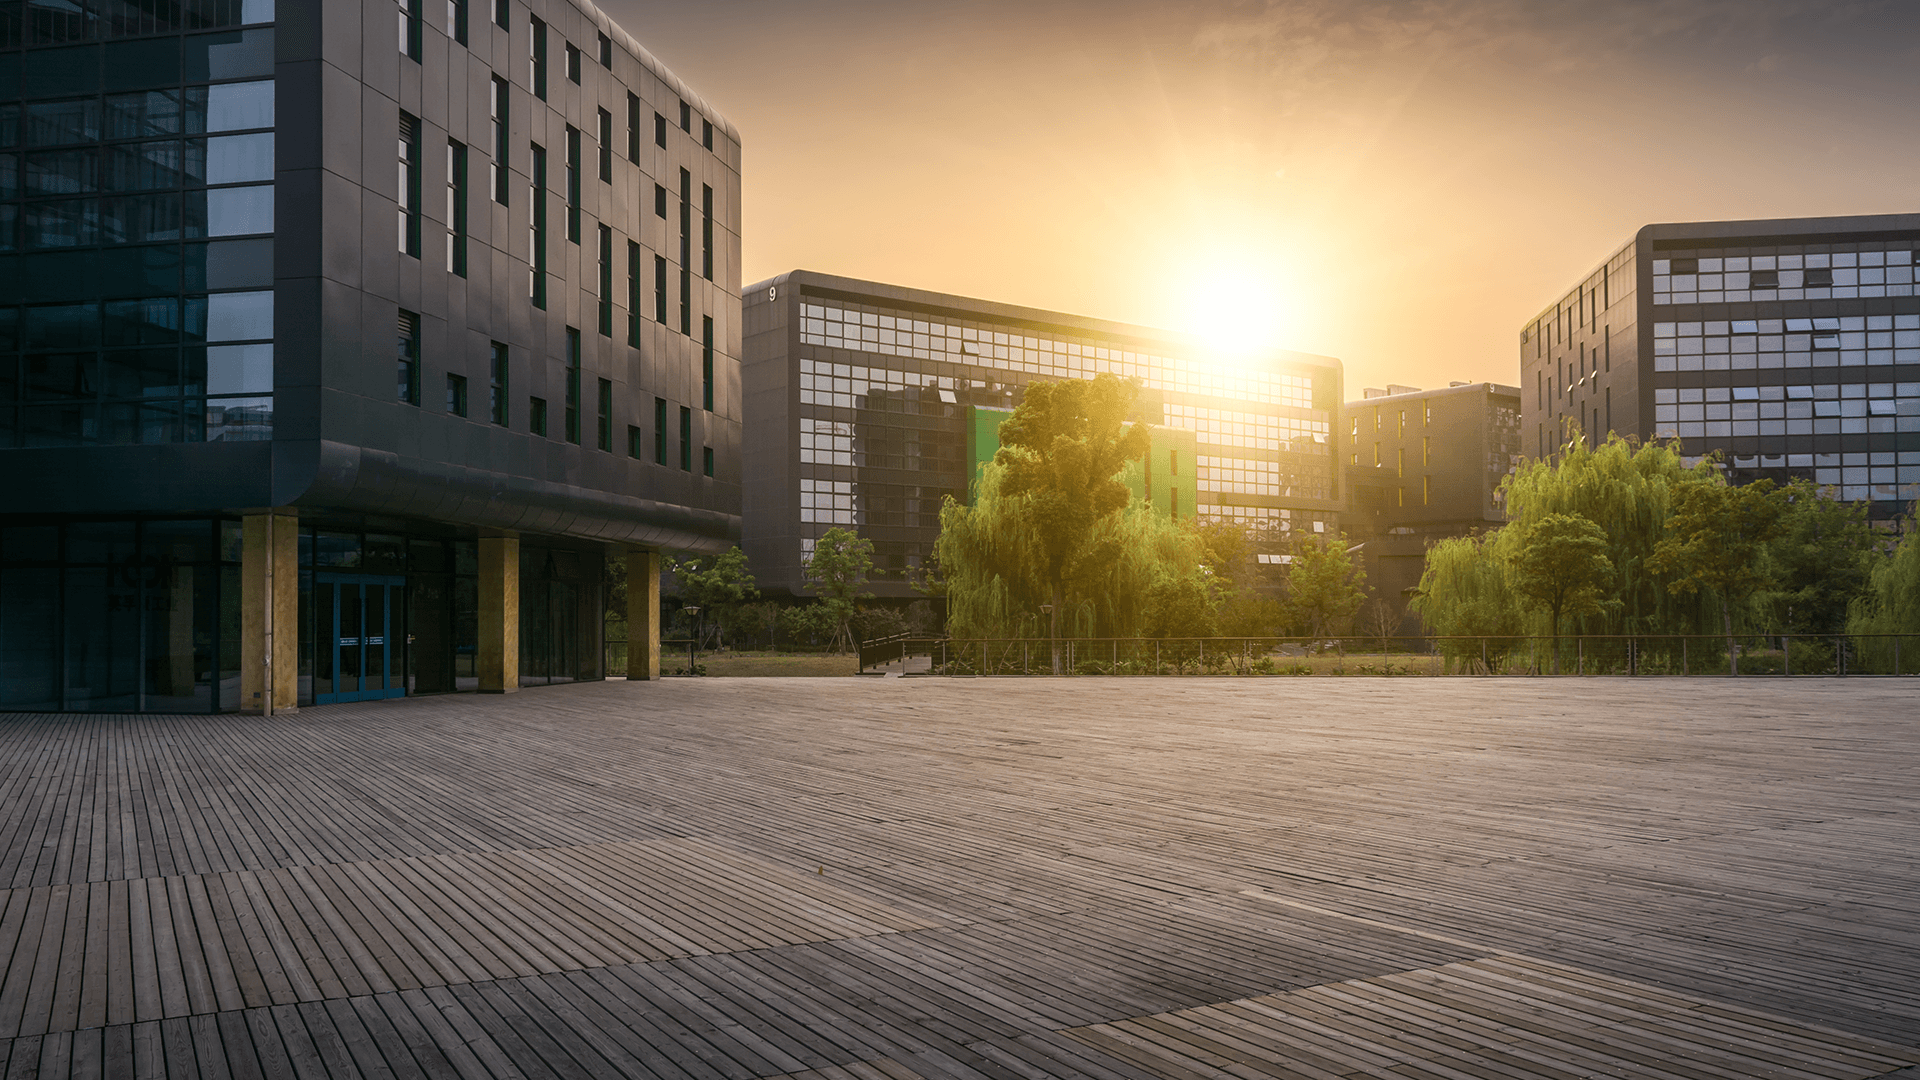 Bâtiment de bureaux sur fond de coucher de soleil et avec des arbres verts en fond.